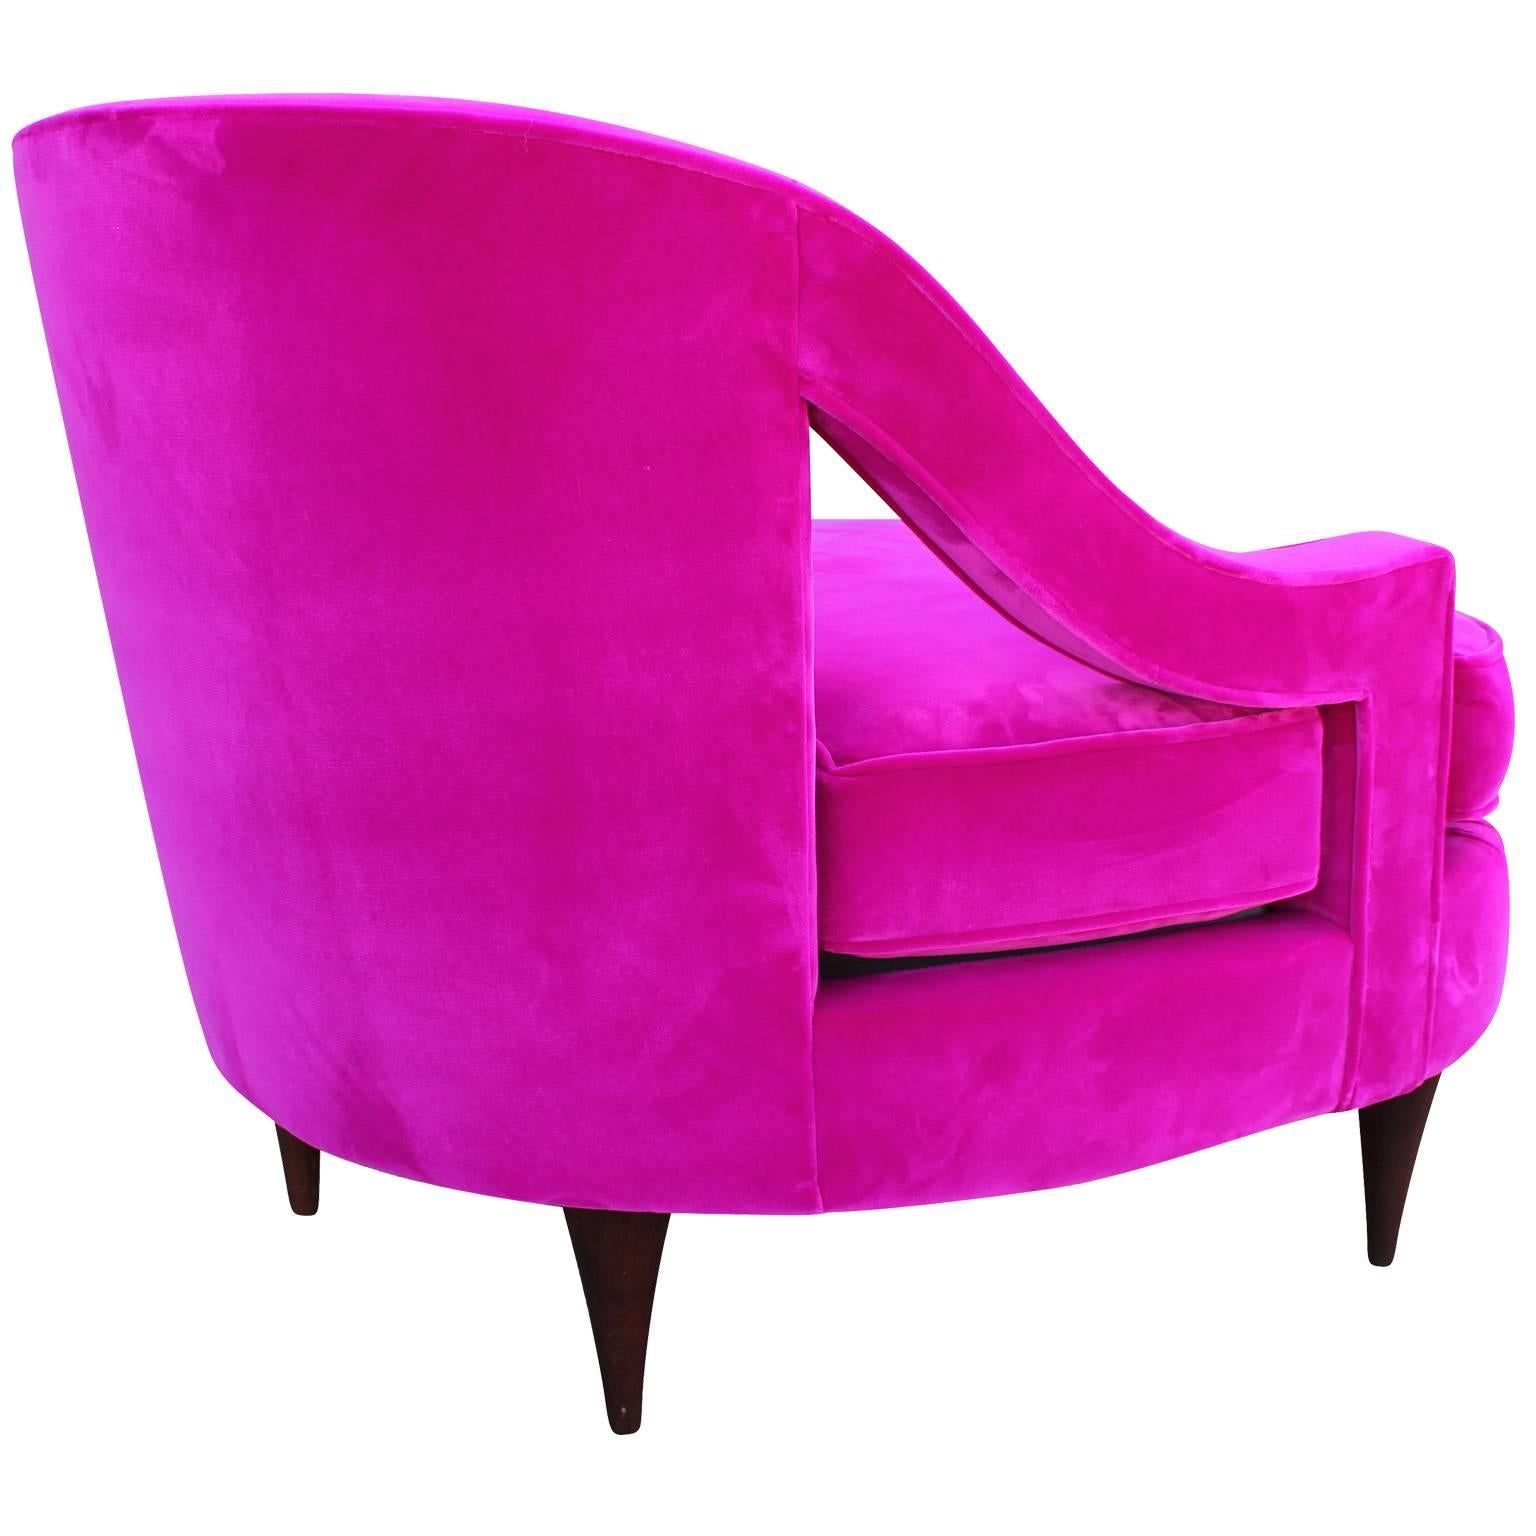 Hollywood Regency Glamorous Fuchsia Pink Velvet Lounge Chair